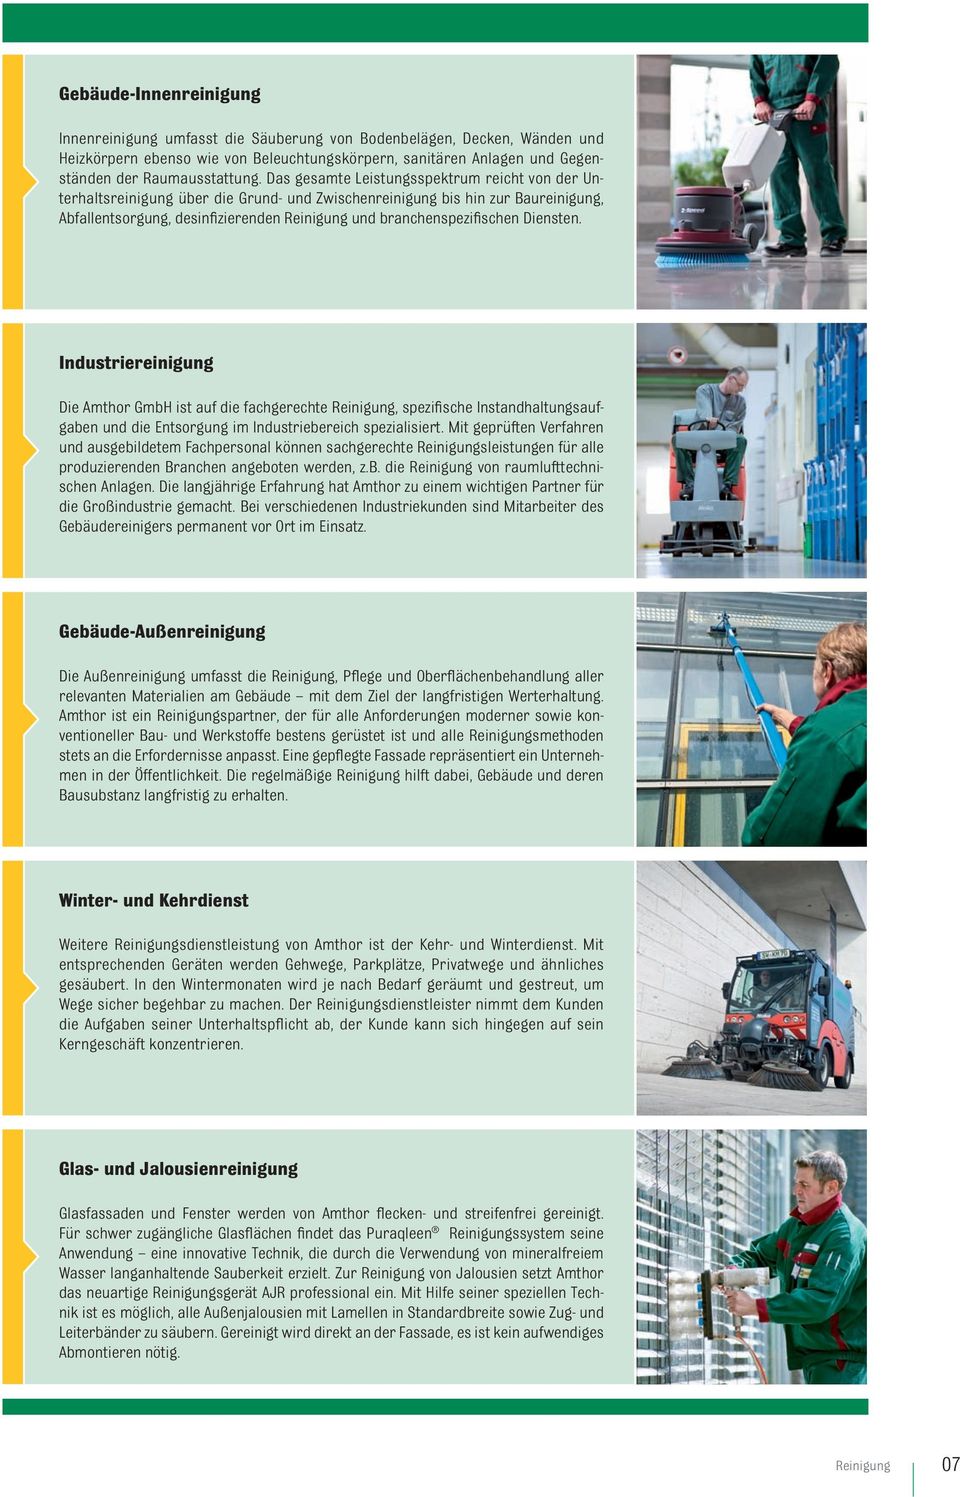 Diensten. Industriereinigung Die Amthor GmbH ist auf die fachgerechte Reinigung, spezifische Instandhaltungsaufgaben und die Entsorgung im Industriebereich spezialisiert.